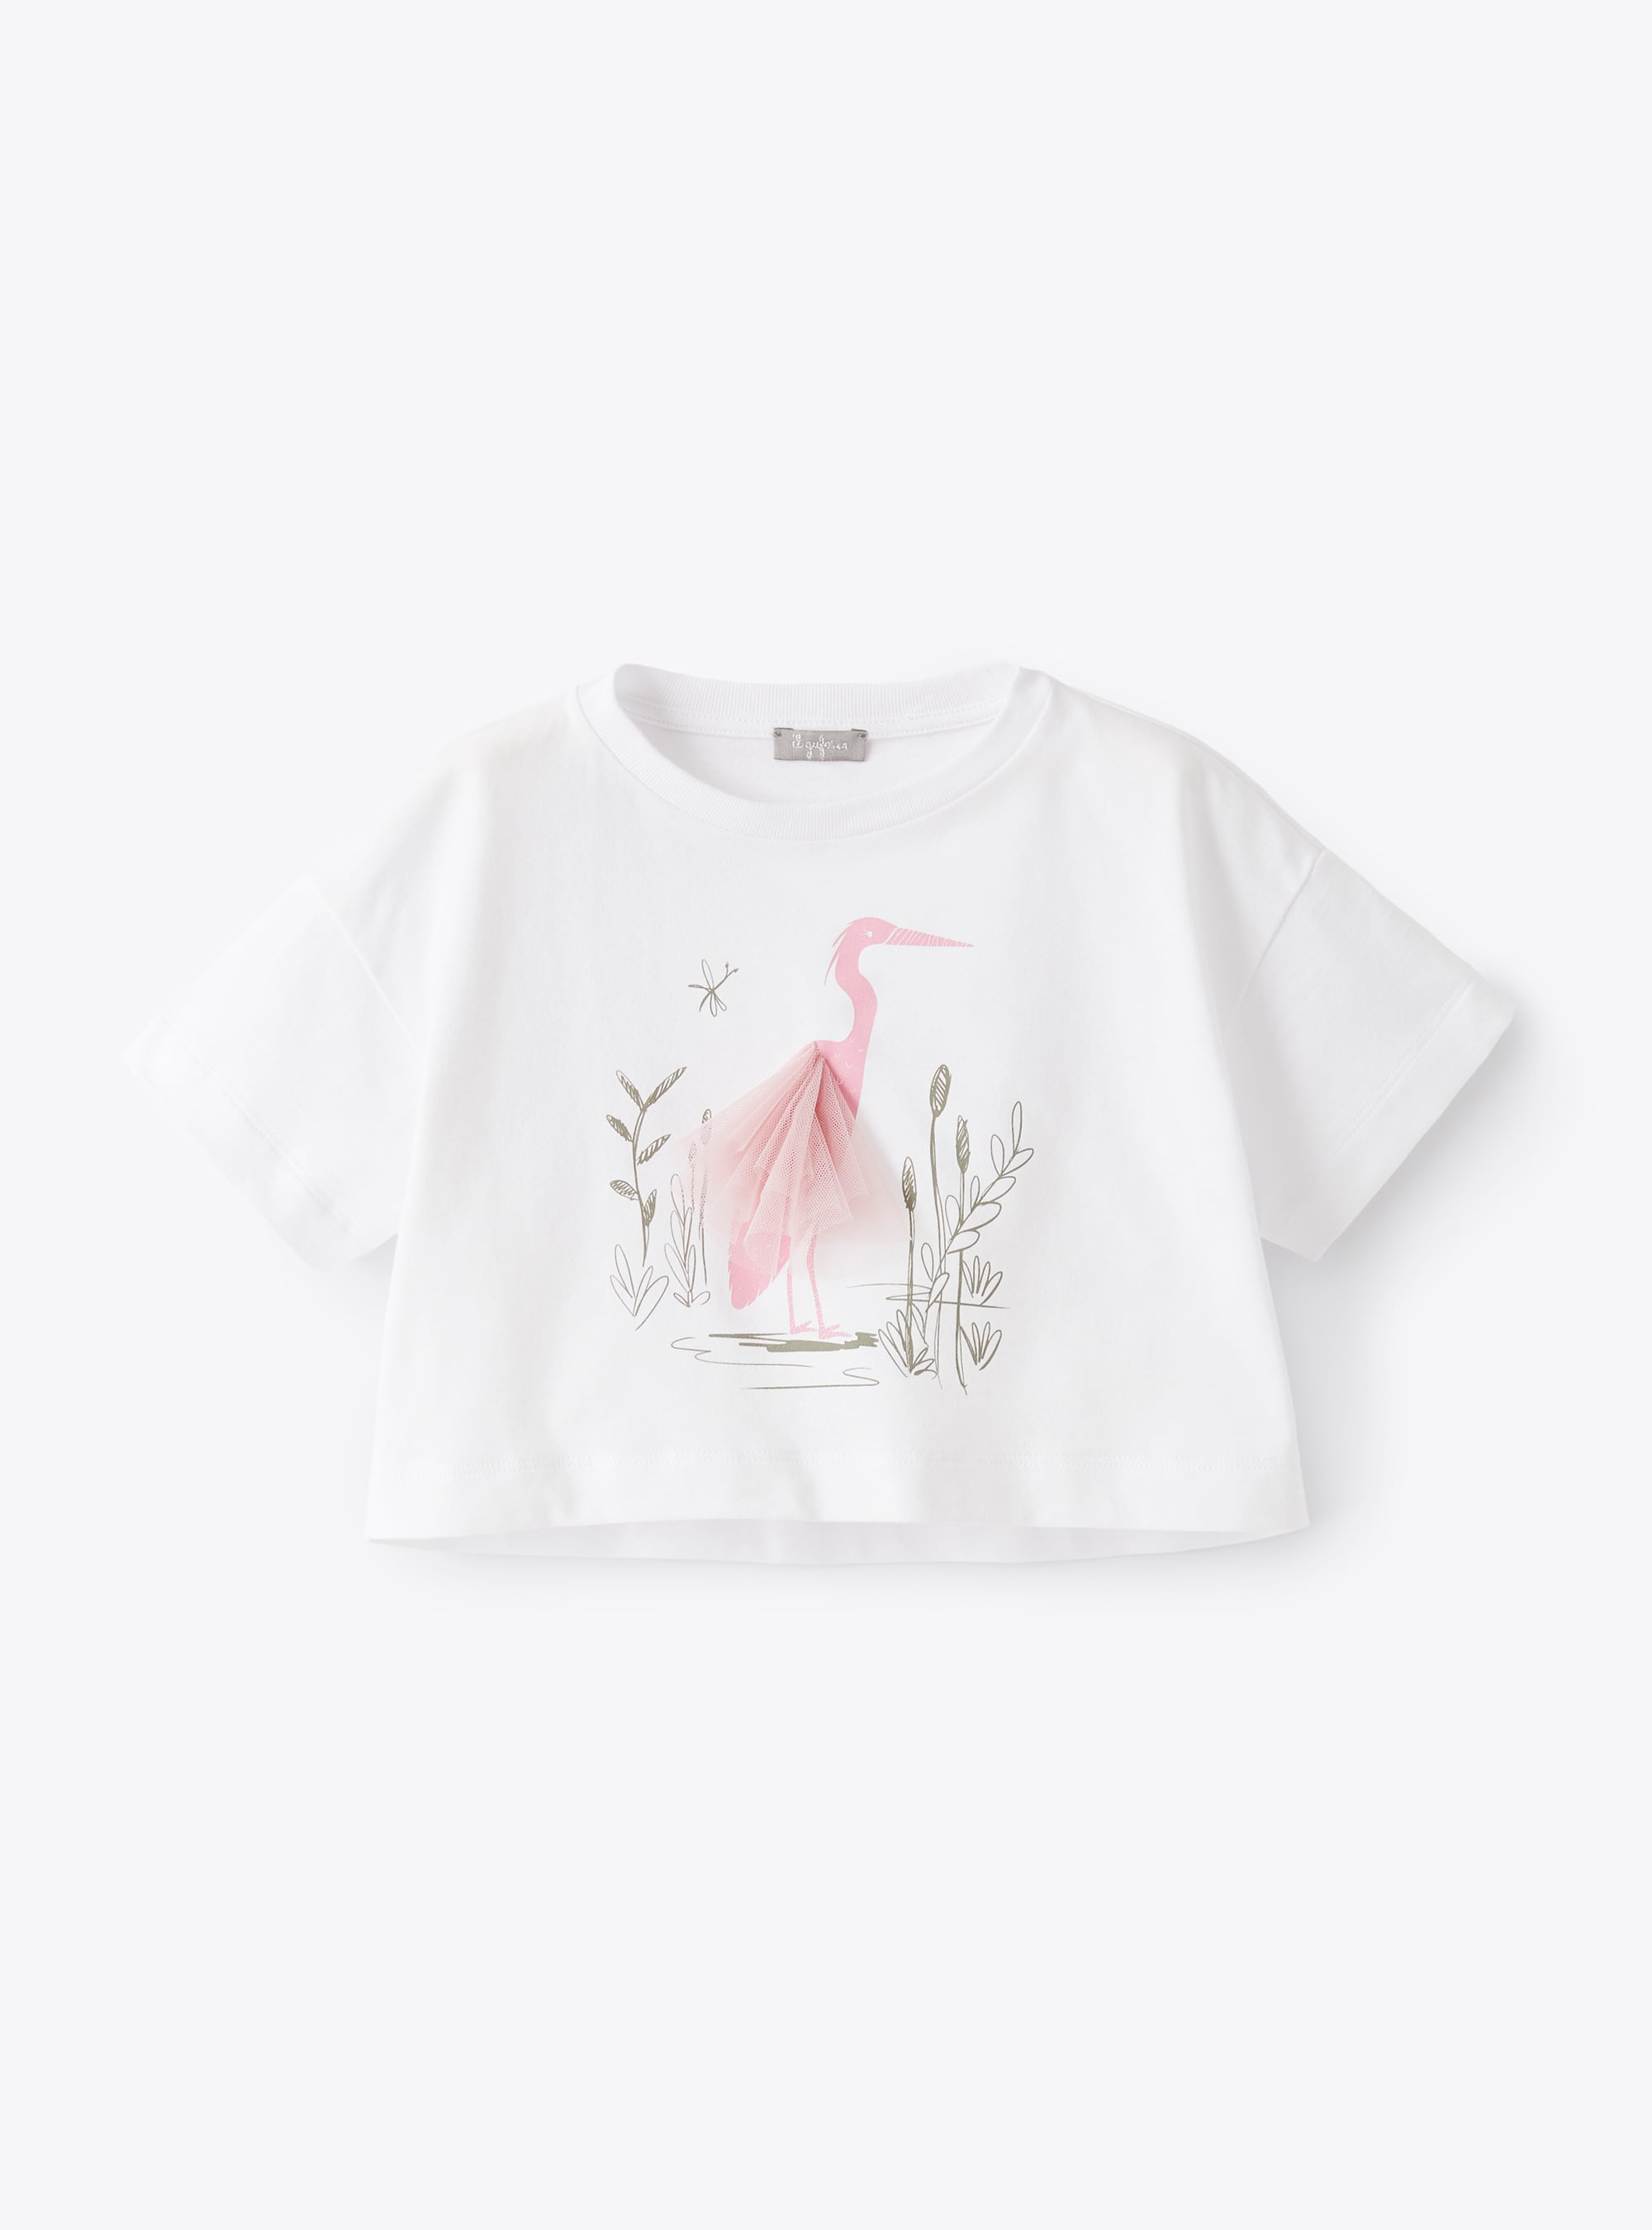 Weißes T-Shirt mit Flamingo-Aufdruck - T-shirts - Il Gufo